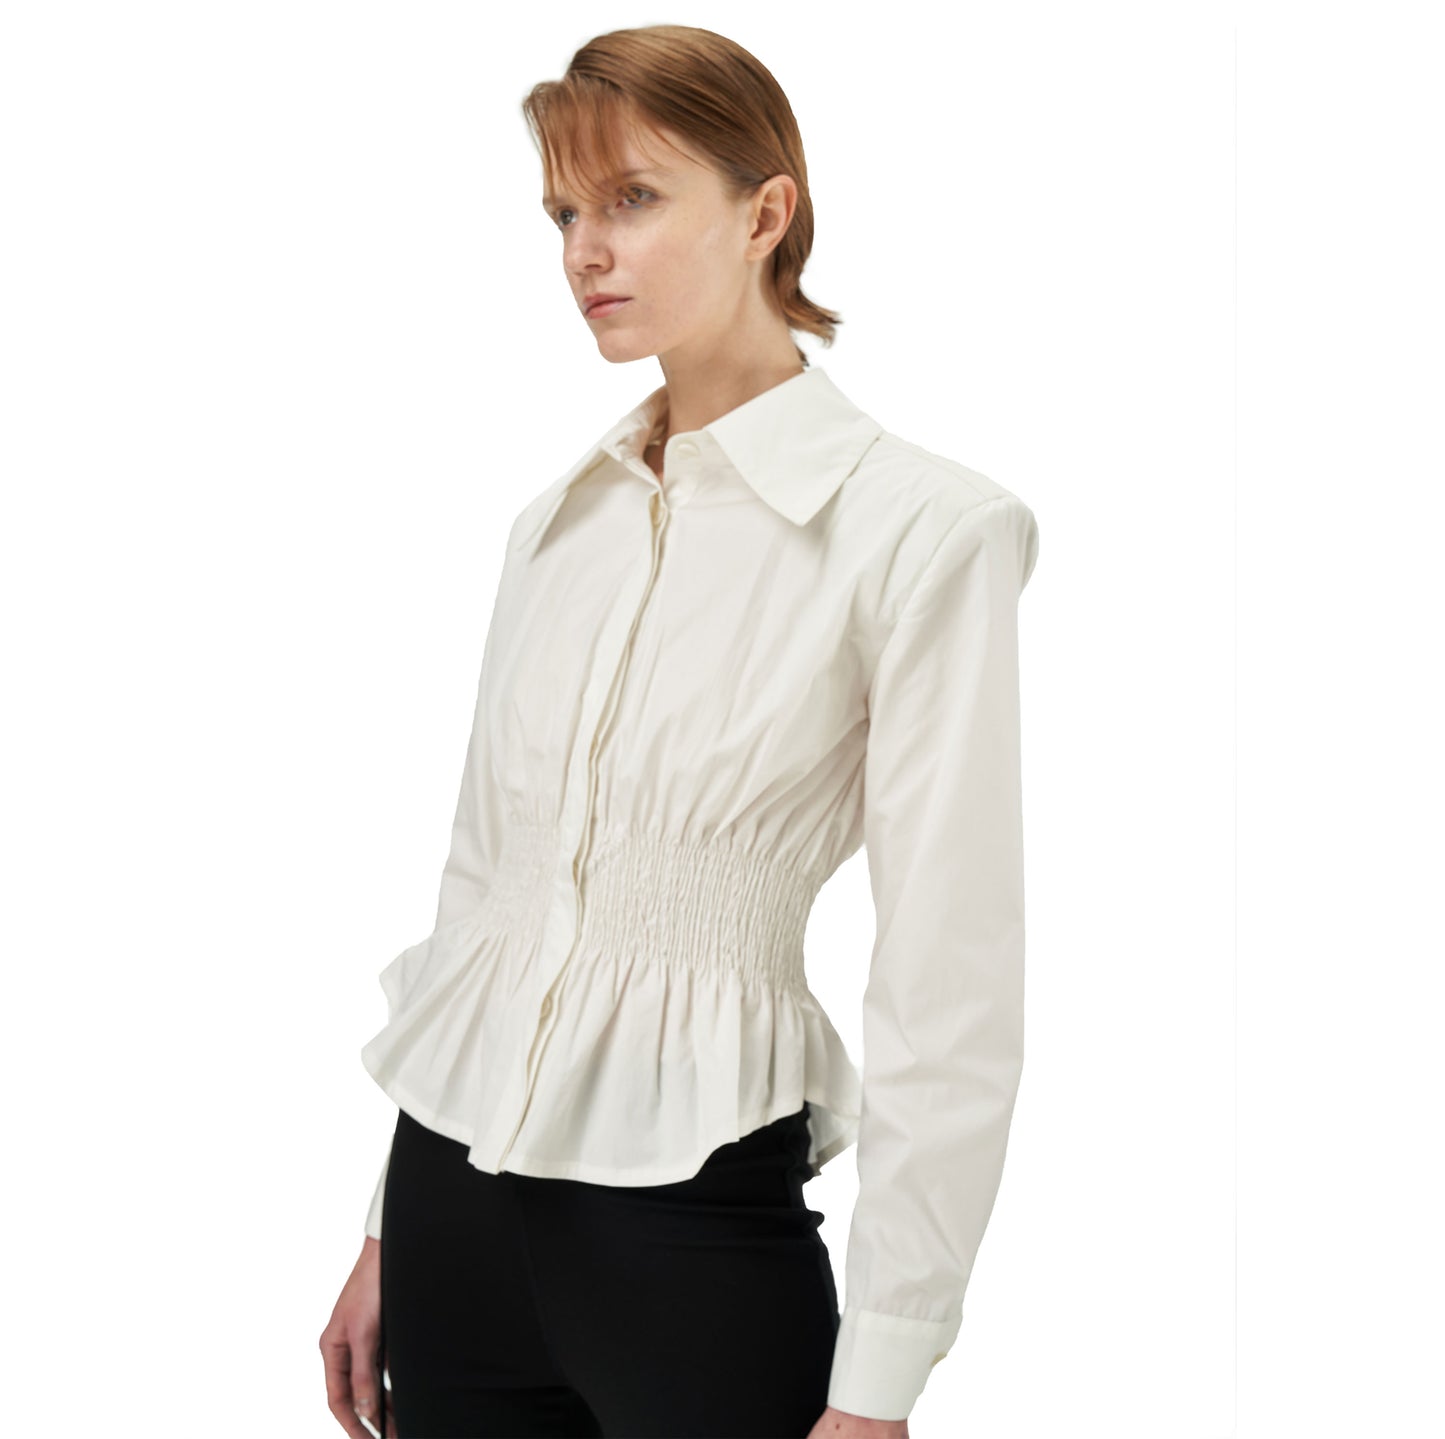 Coana Shirred Waist Poplin Shirt in White